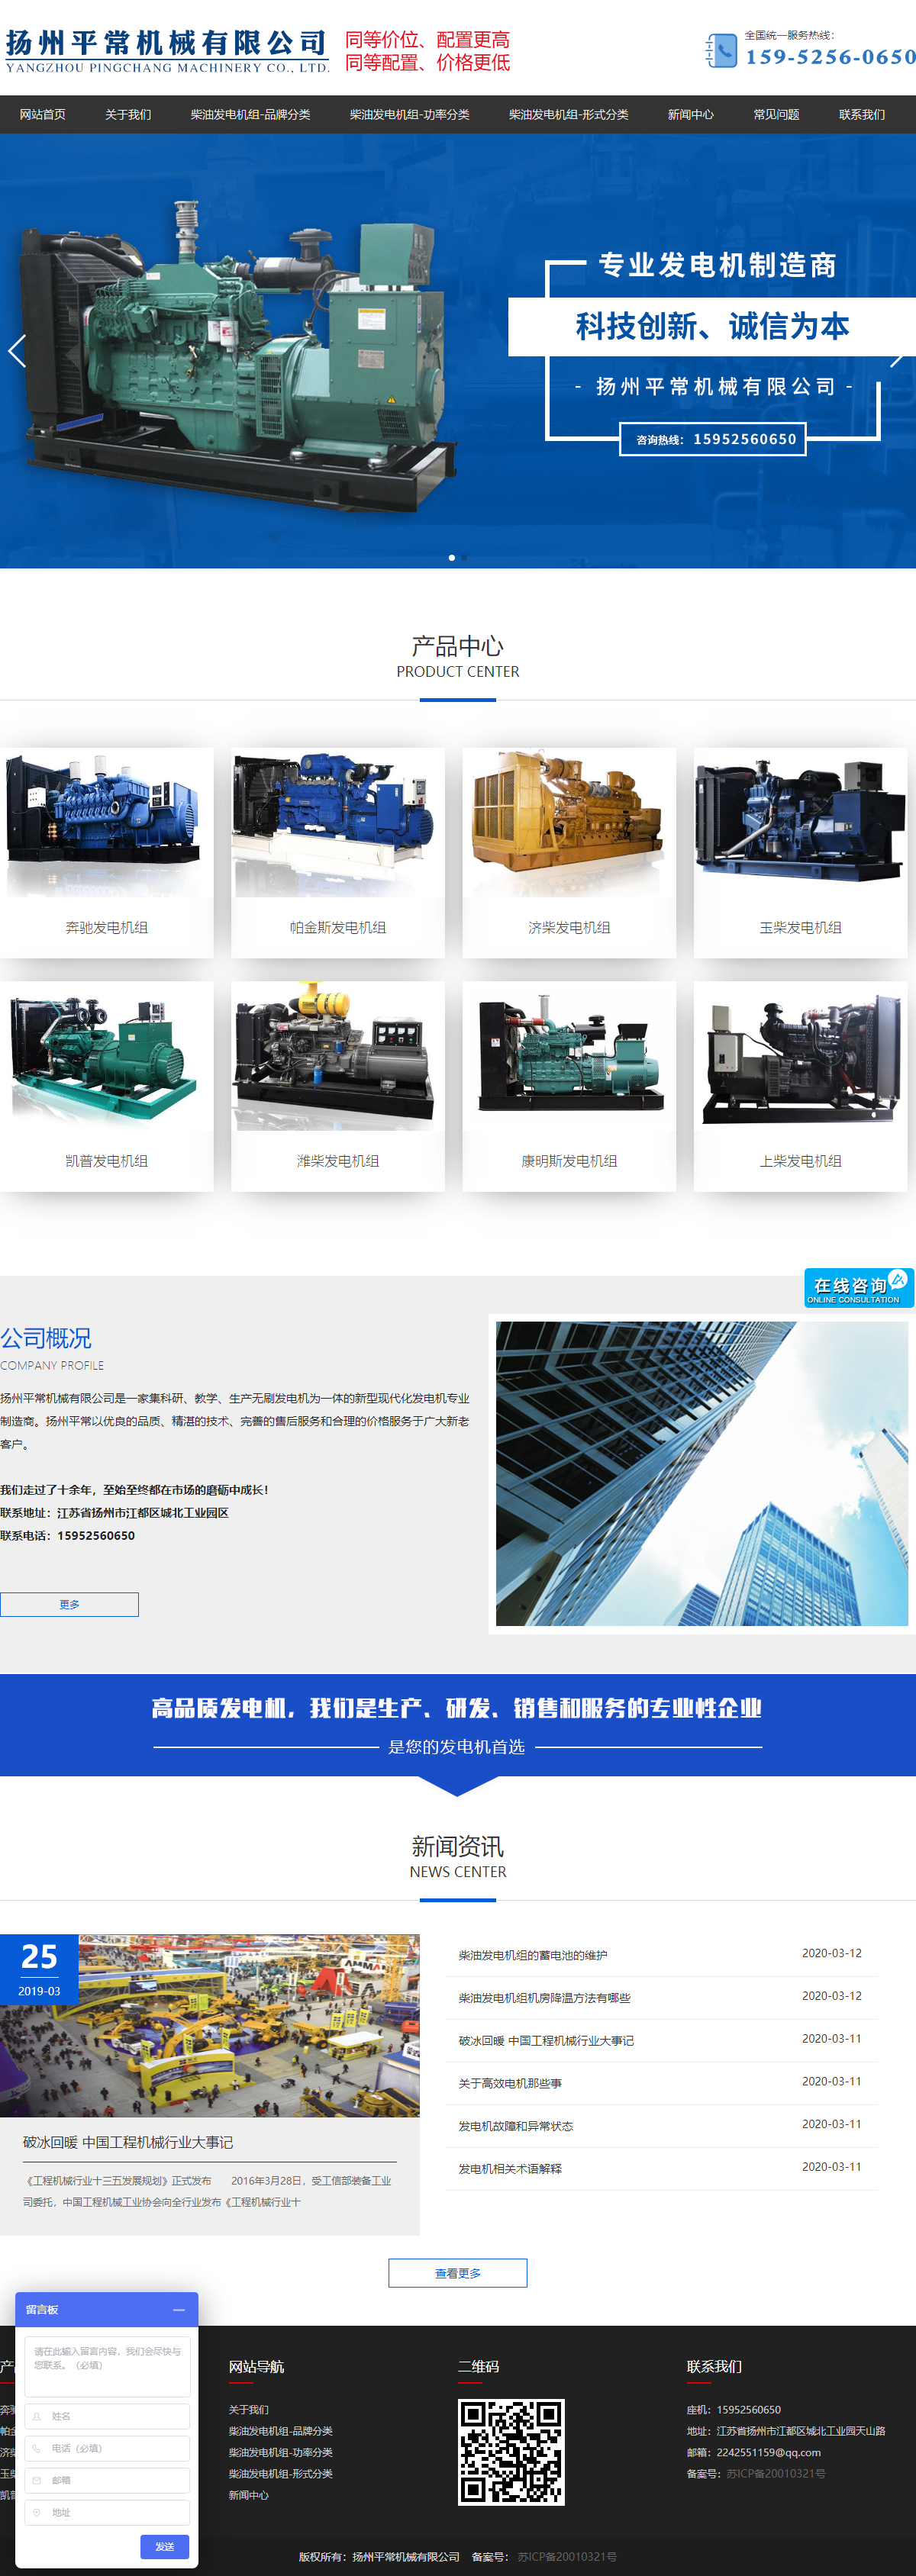 扬州平常机械有限公司网站案例